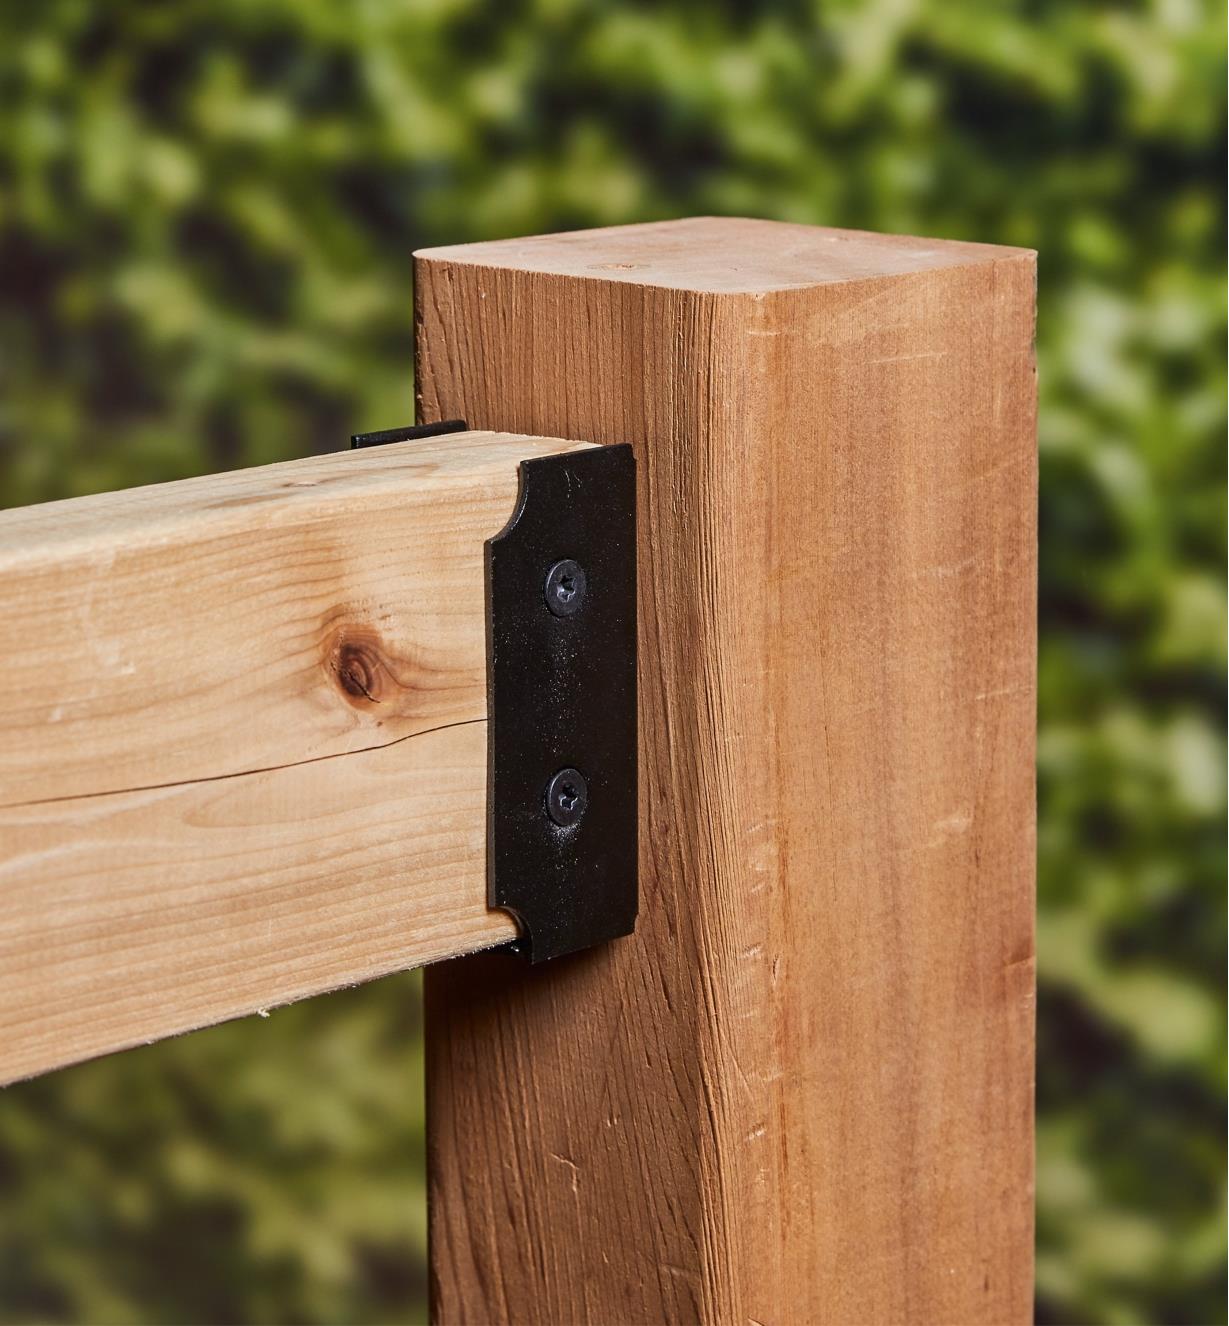 Deux pièces de bois jointes par un connecteur pour traverses